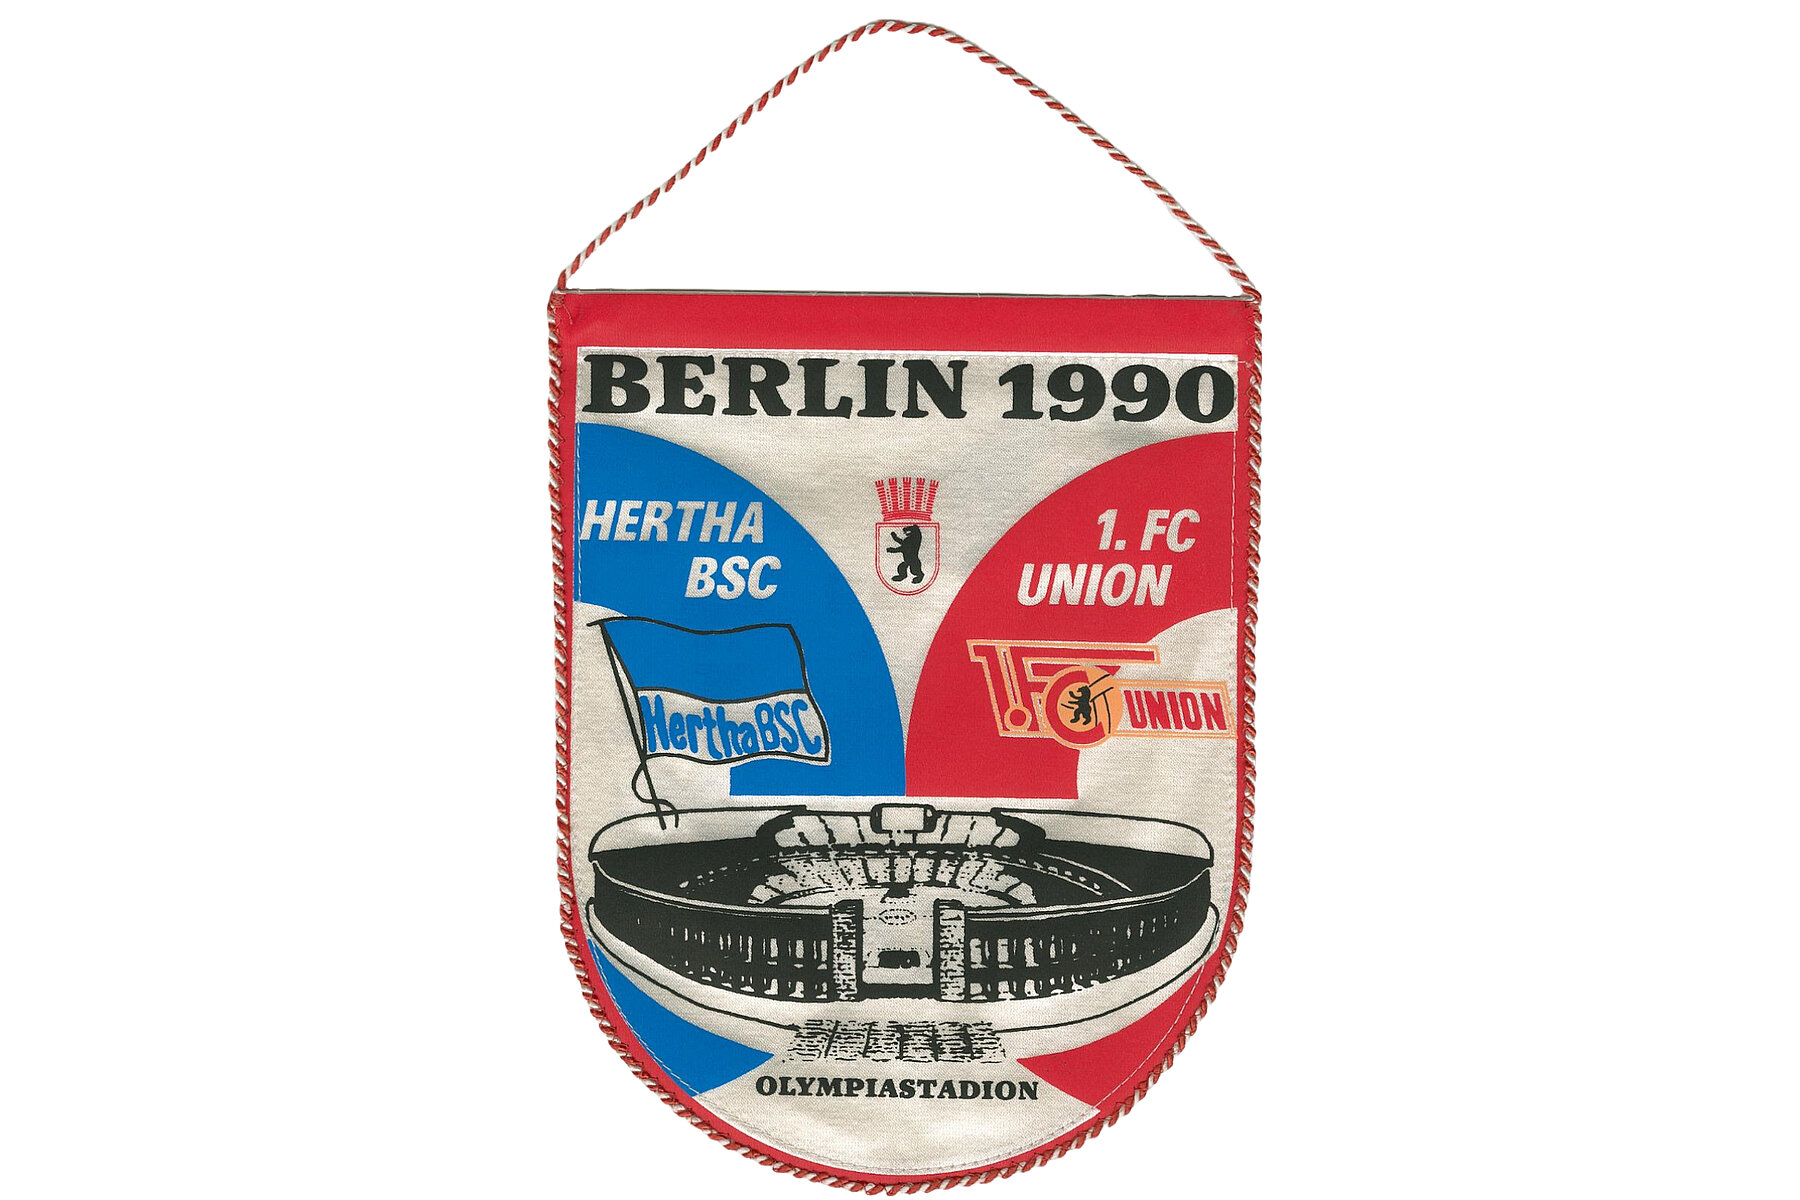 Wimpel mit mit einer mittigen Abbildung des Olympiastaidions. Auf der linken Seite bfindet sich blaue Werbung für Hertha, auf der rechten Seite rote Werbung für Union. Oben steht der Schriftzug: Berliln 1990.